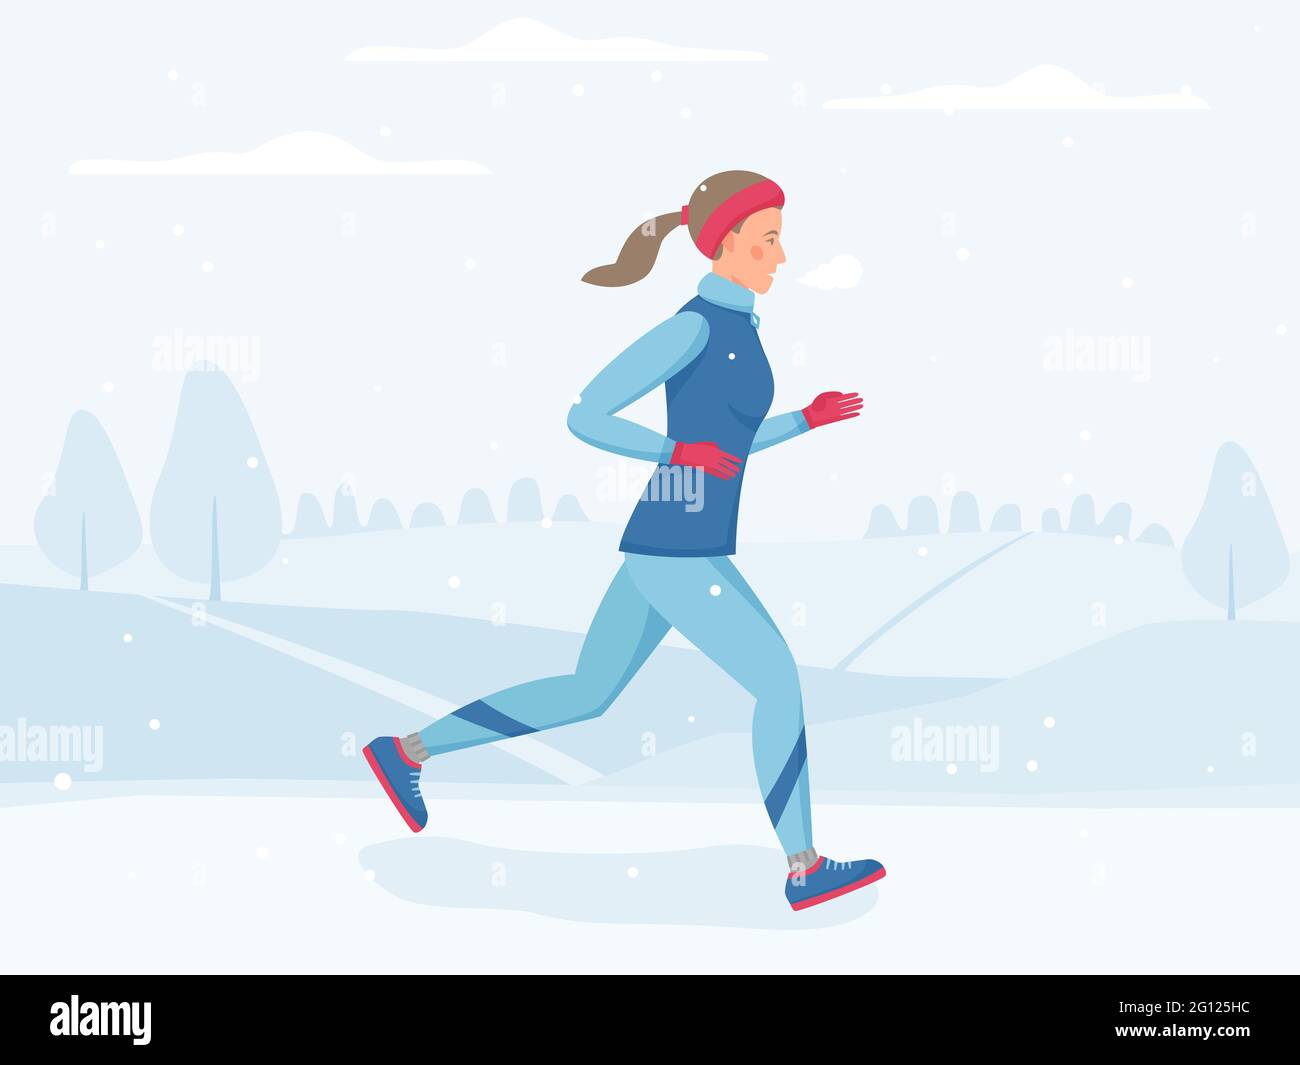 Frau läuft im Winterpark, joggt draußen bei kaltem Wetter, Sport und körperliche Aktivität im Freien bei eiskalter Kälte, Vektorgrafik im flachen Stil Stock Vektor